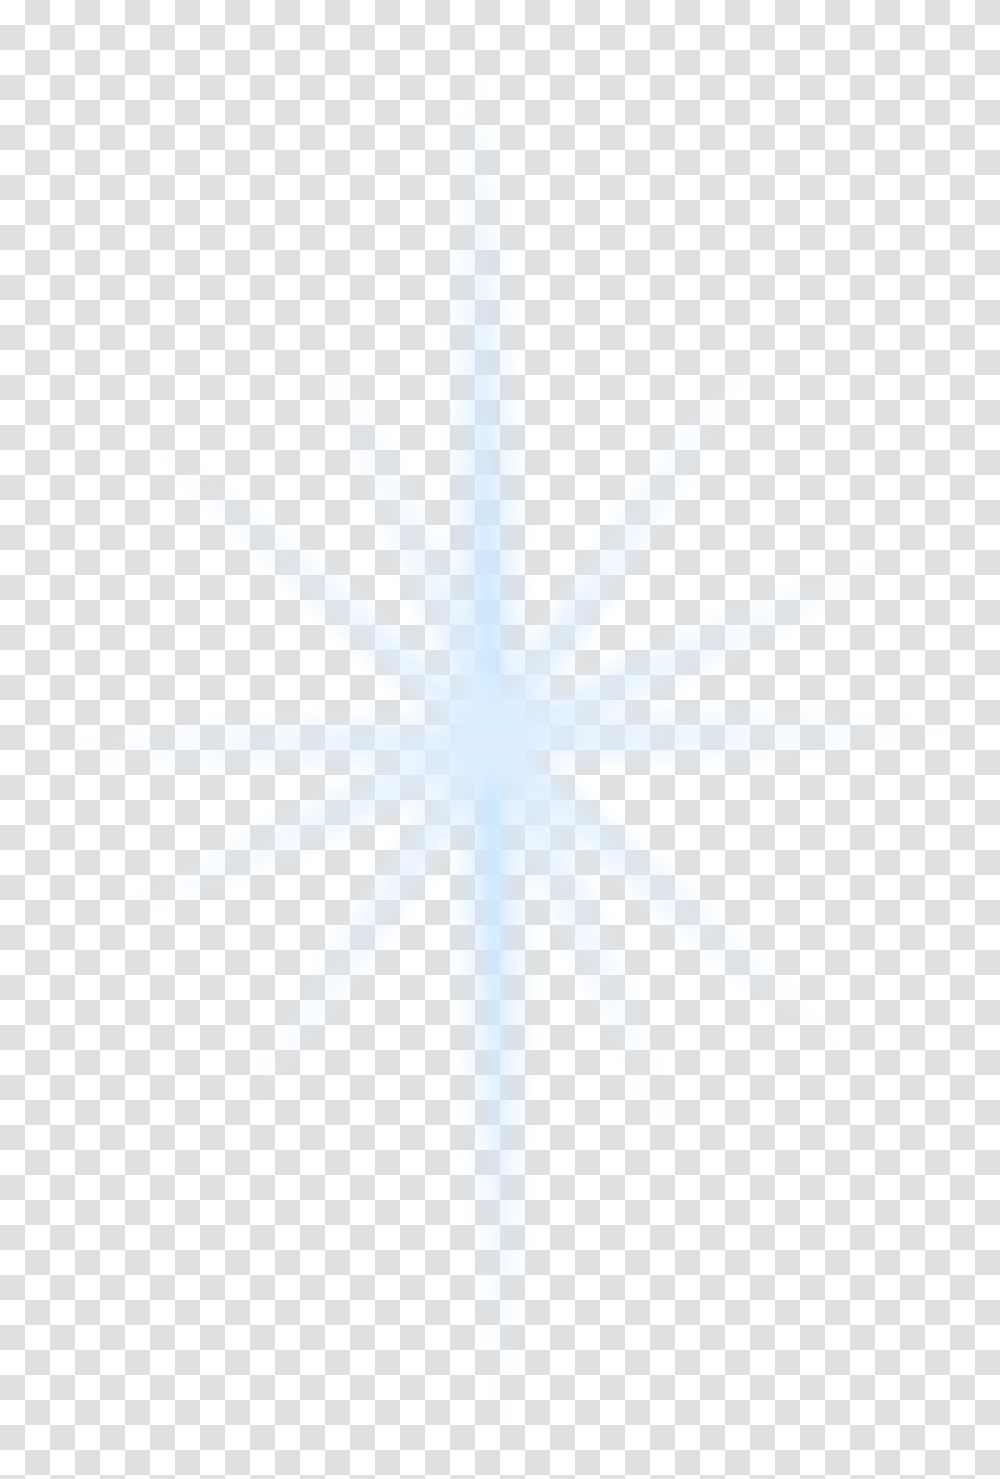 Sparkle Clipart Gold Starburst Cross, Star Symbol, Leaf, Plant Transparent Png